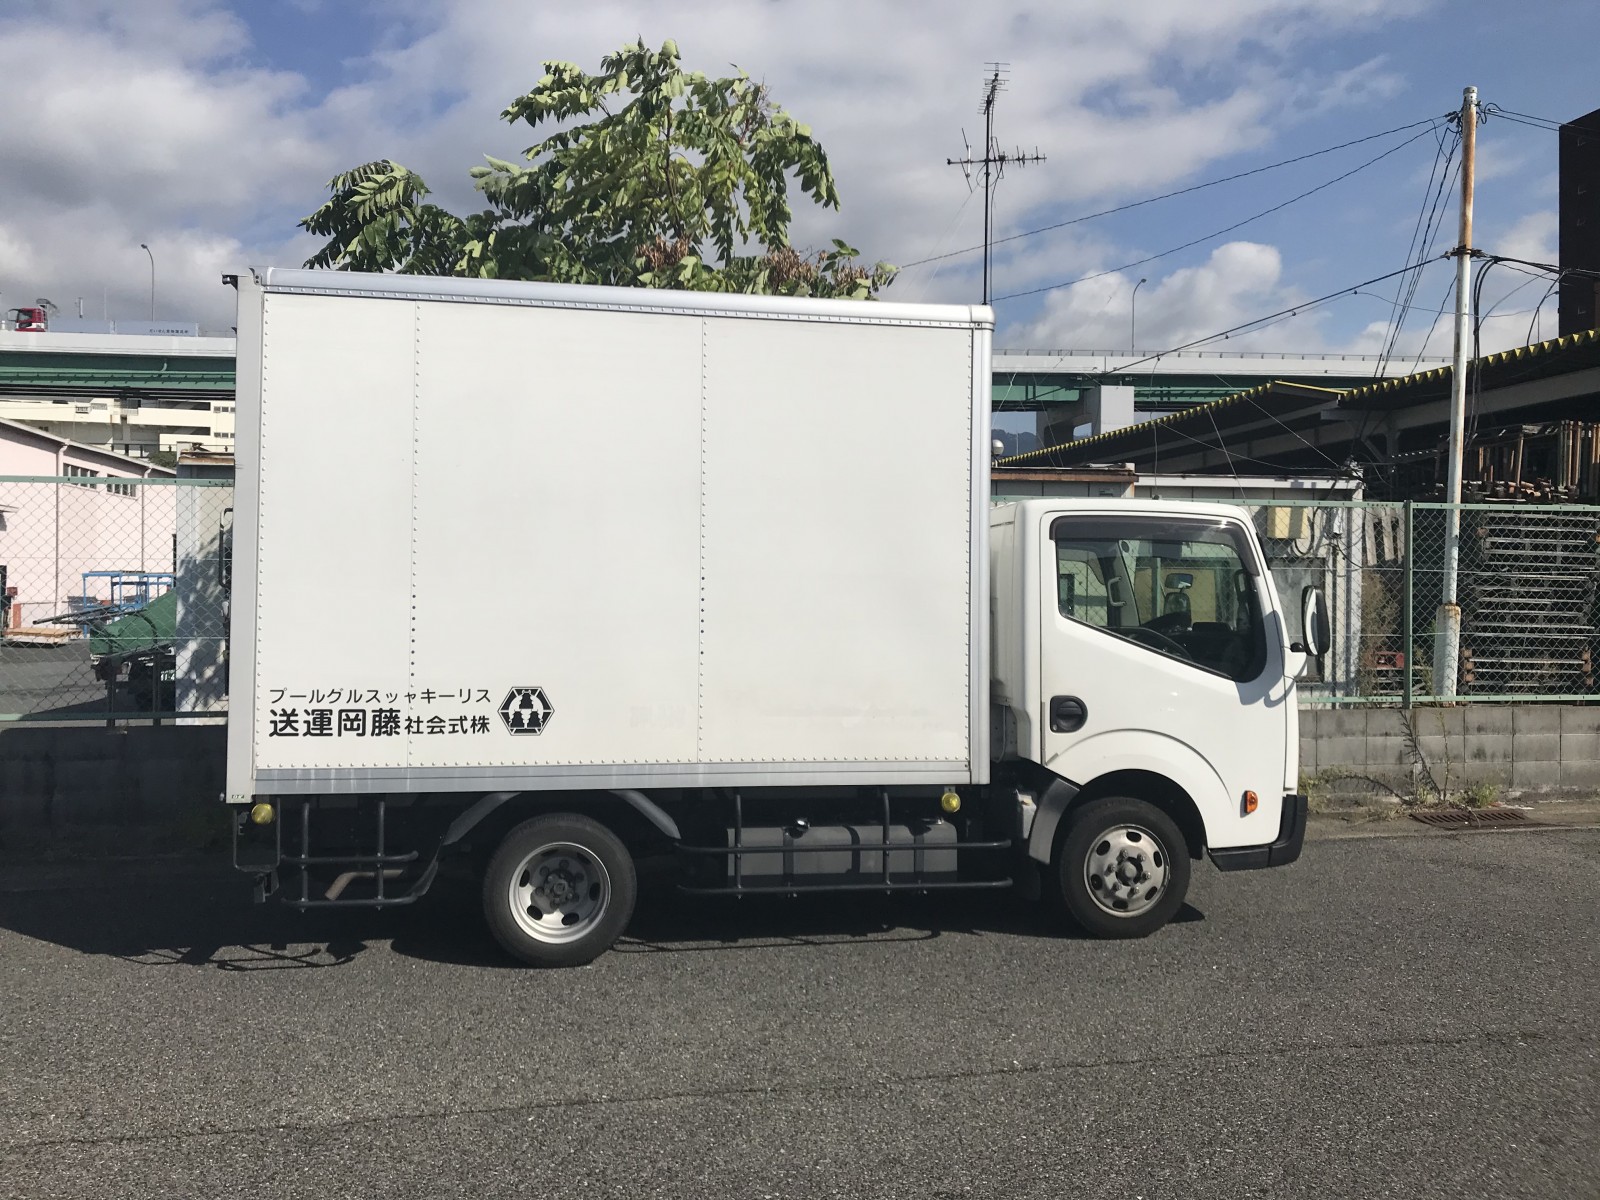 大手住宅建材商品の沖縄定期便の出荷作業